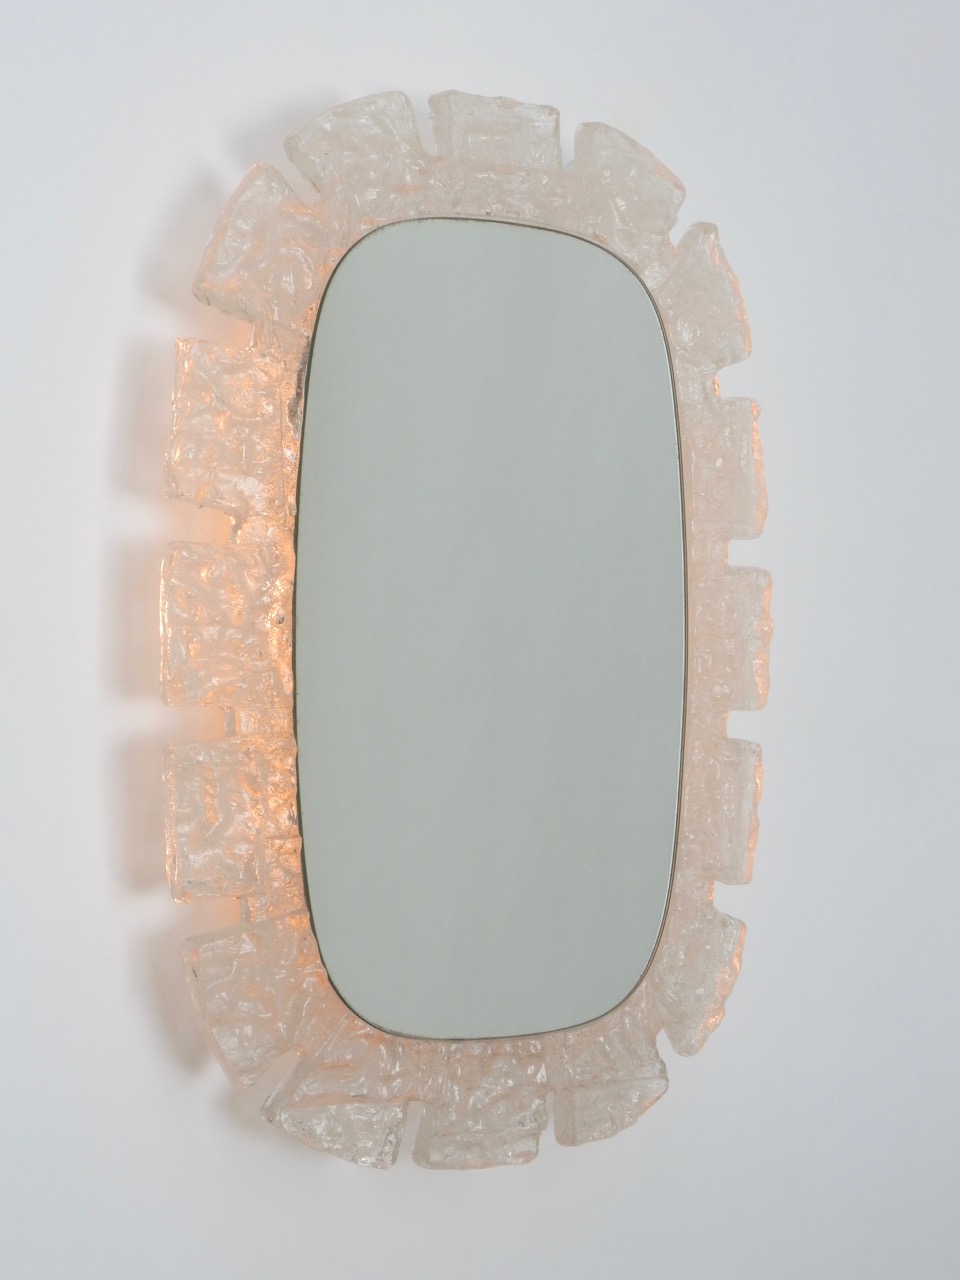 Sold - Illuminated Mirror